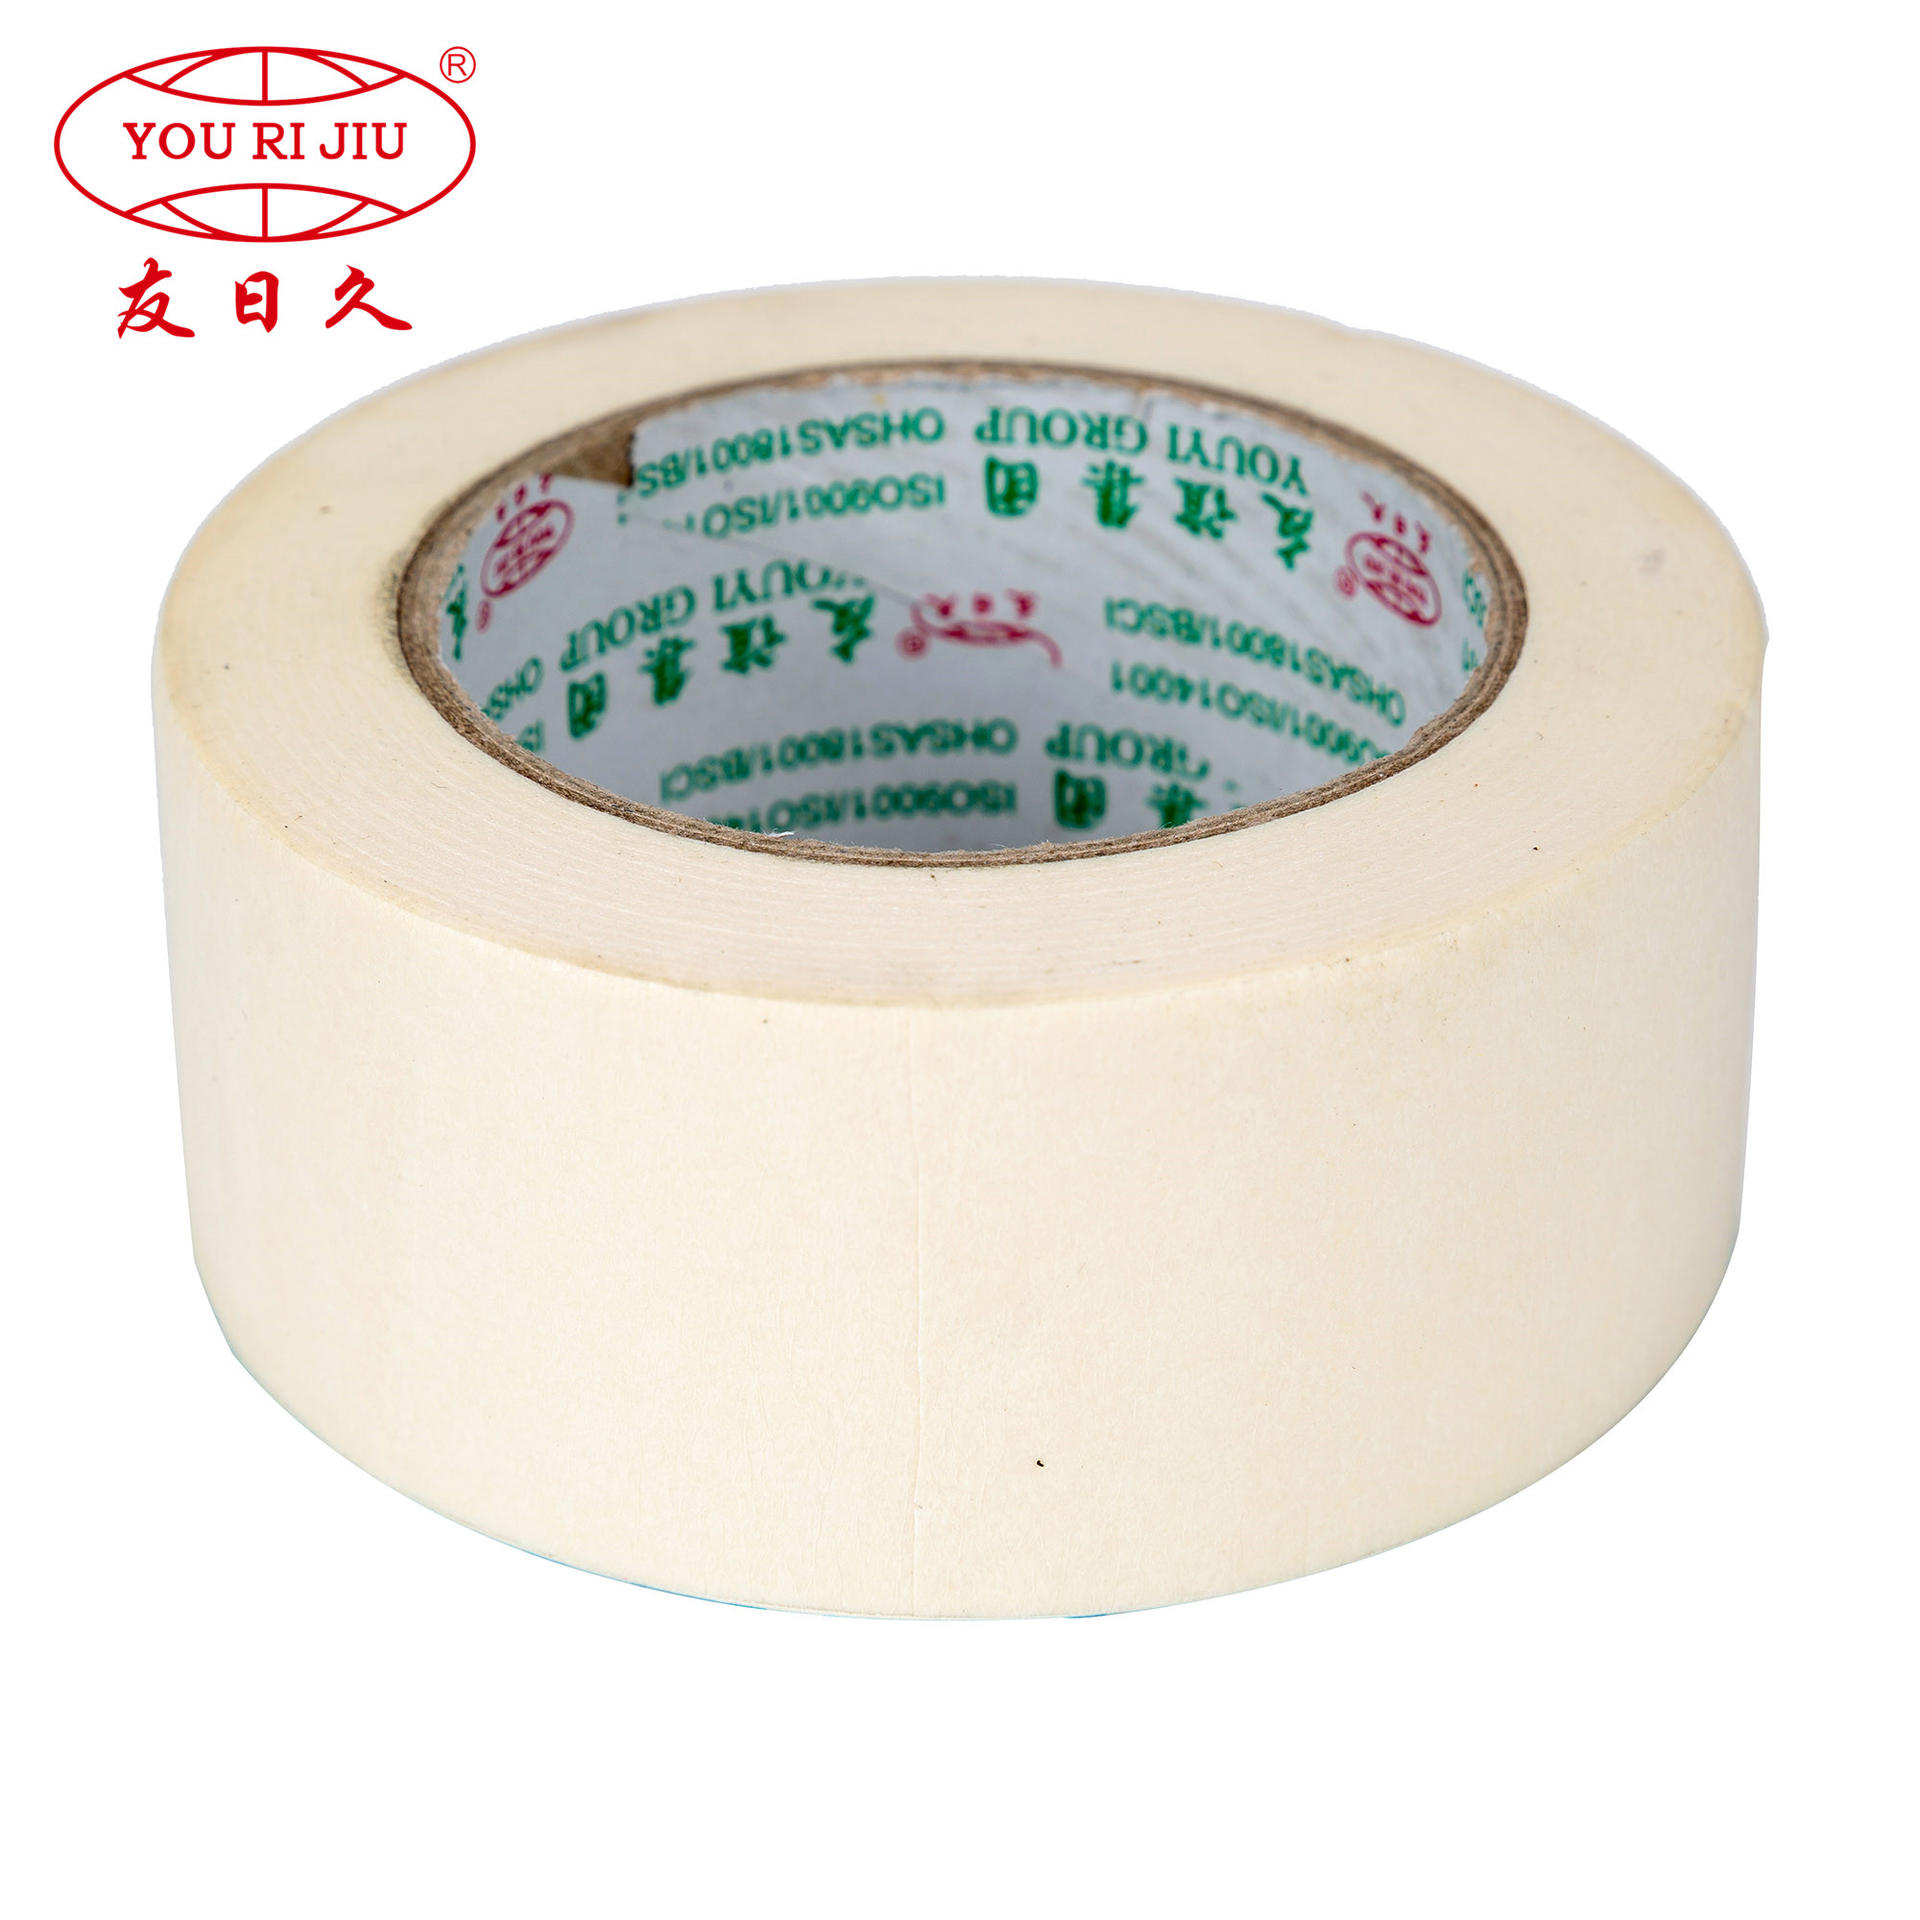 Wholesale custom automotive masking tape painting masking tape manufacturer